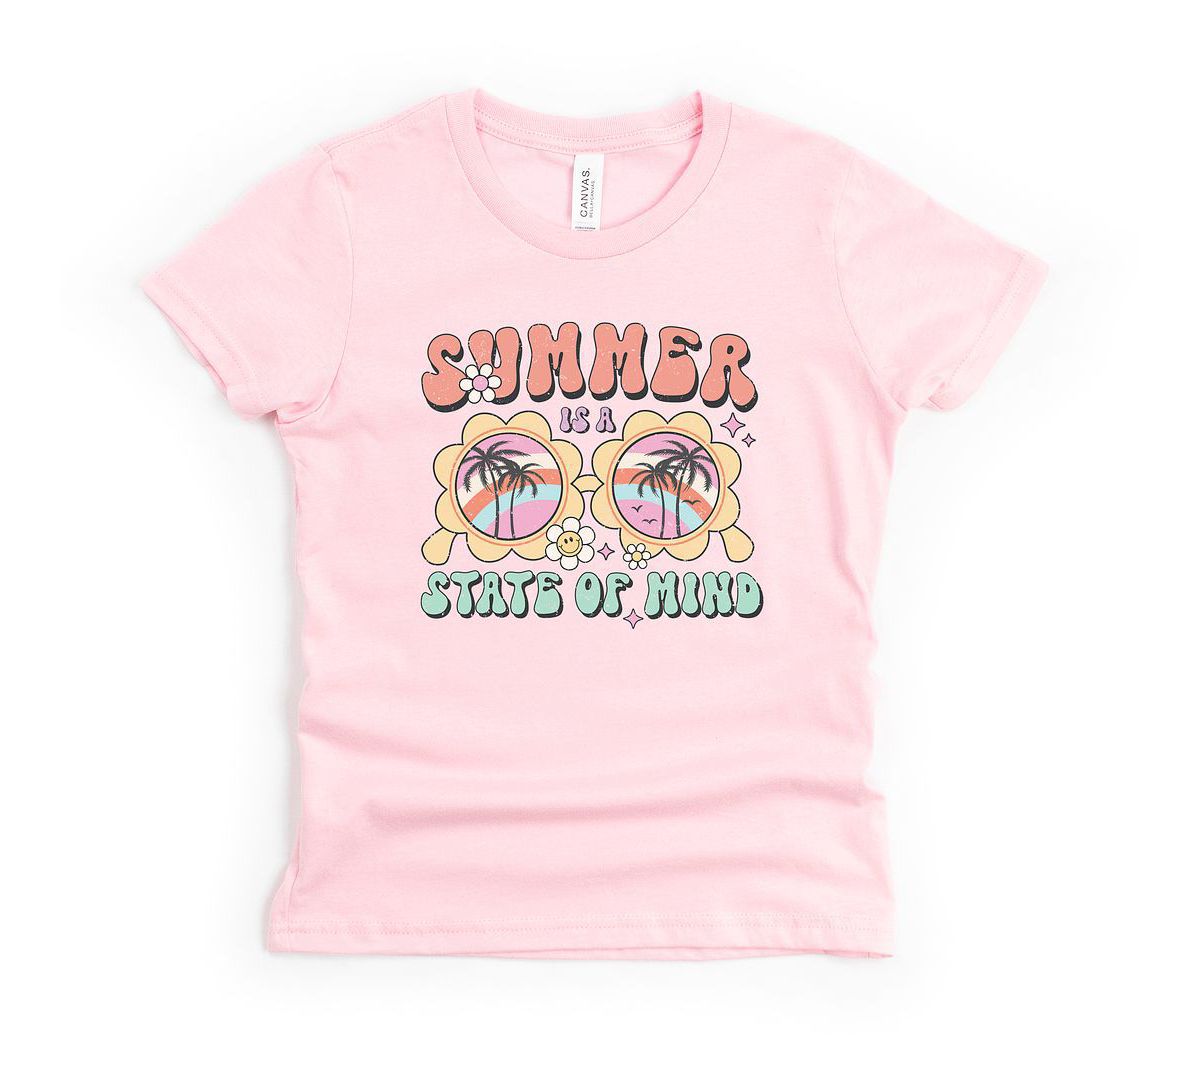 Футболка для девочек The Juniper Shop Summer State Of Mind с коротким рукавом The Juniper Shop